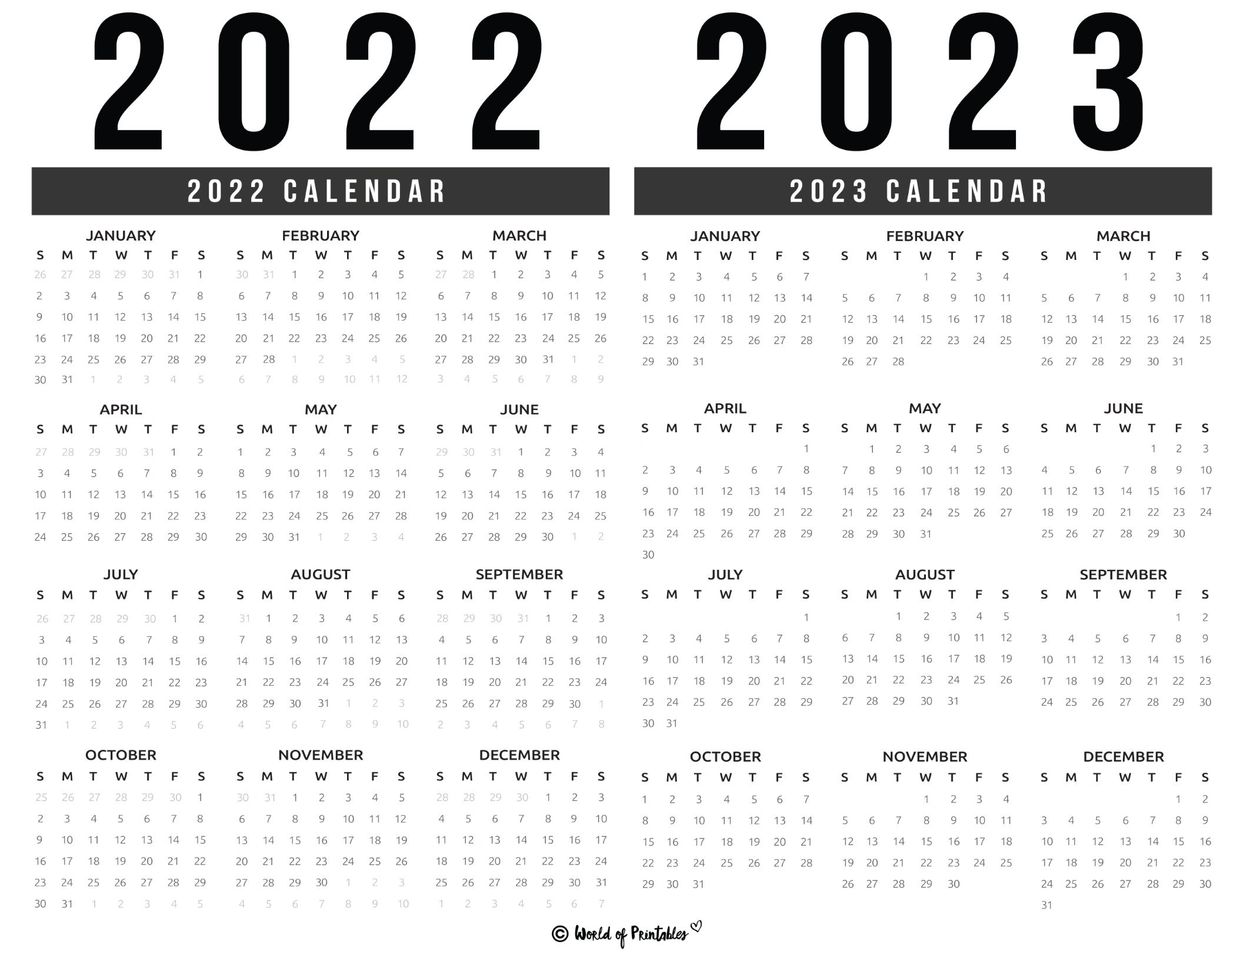 2023 Tentative Schedule